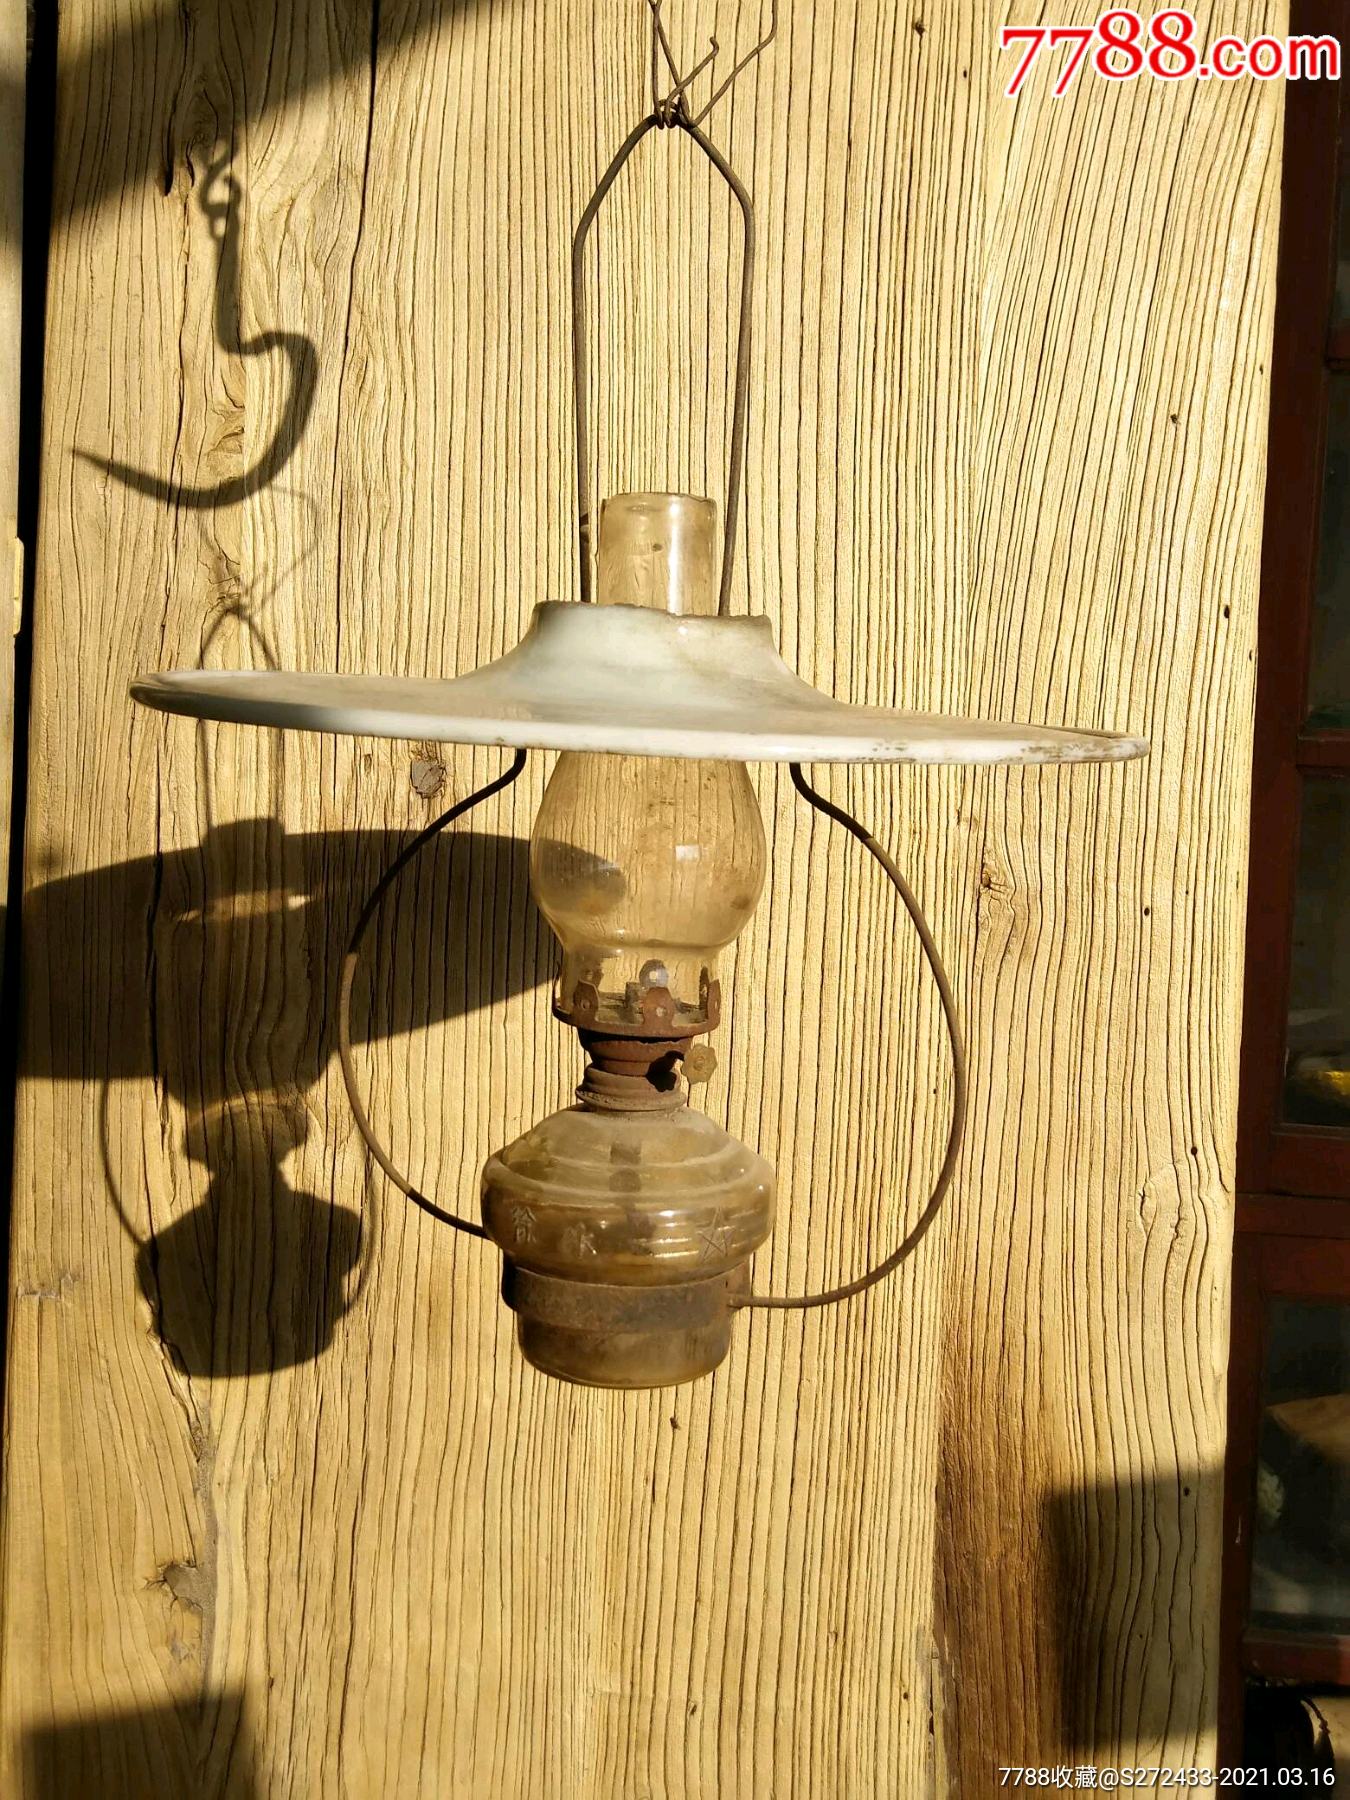 下乡收得解放后六十年代河北徐水生产的玻璃灯一个灯罩齐全难得保存